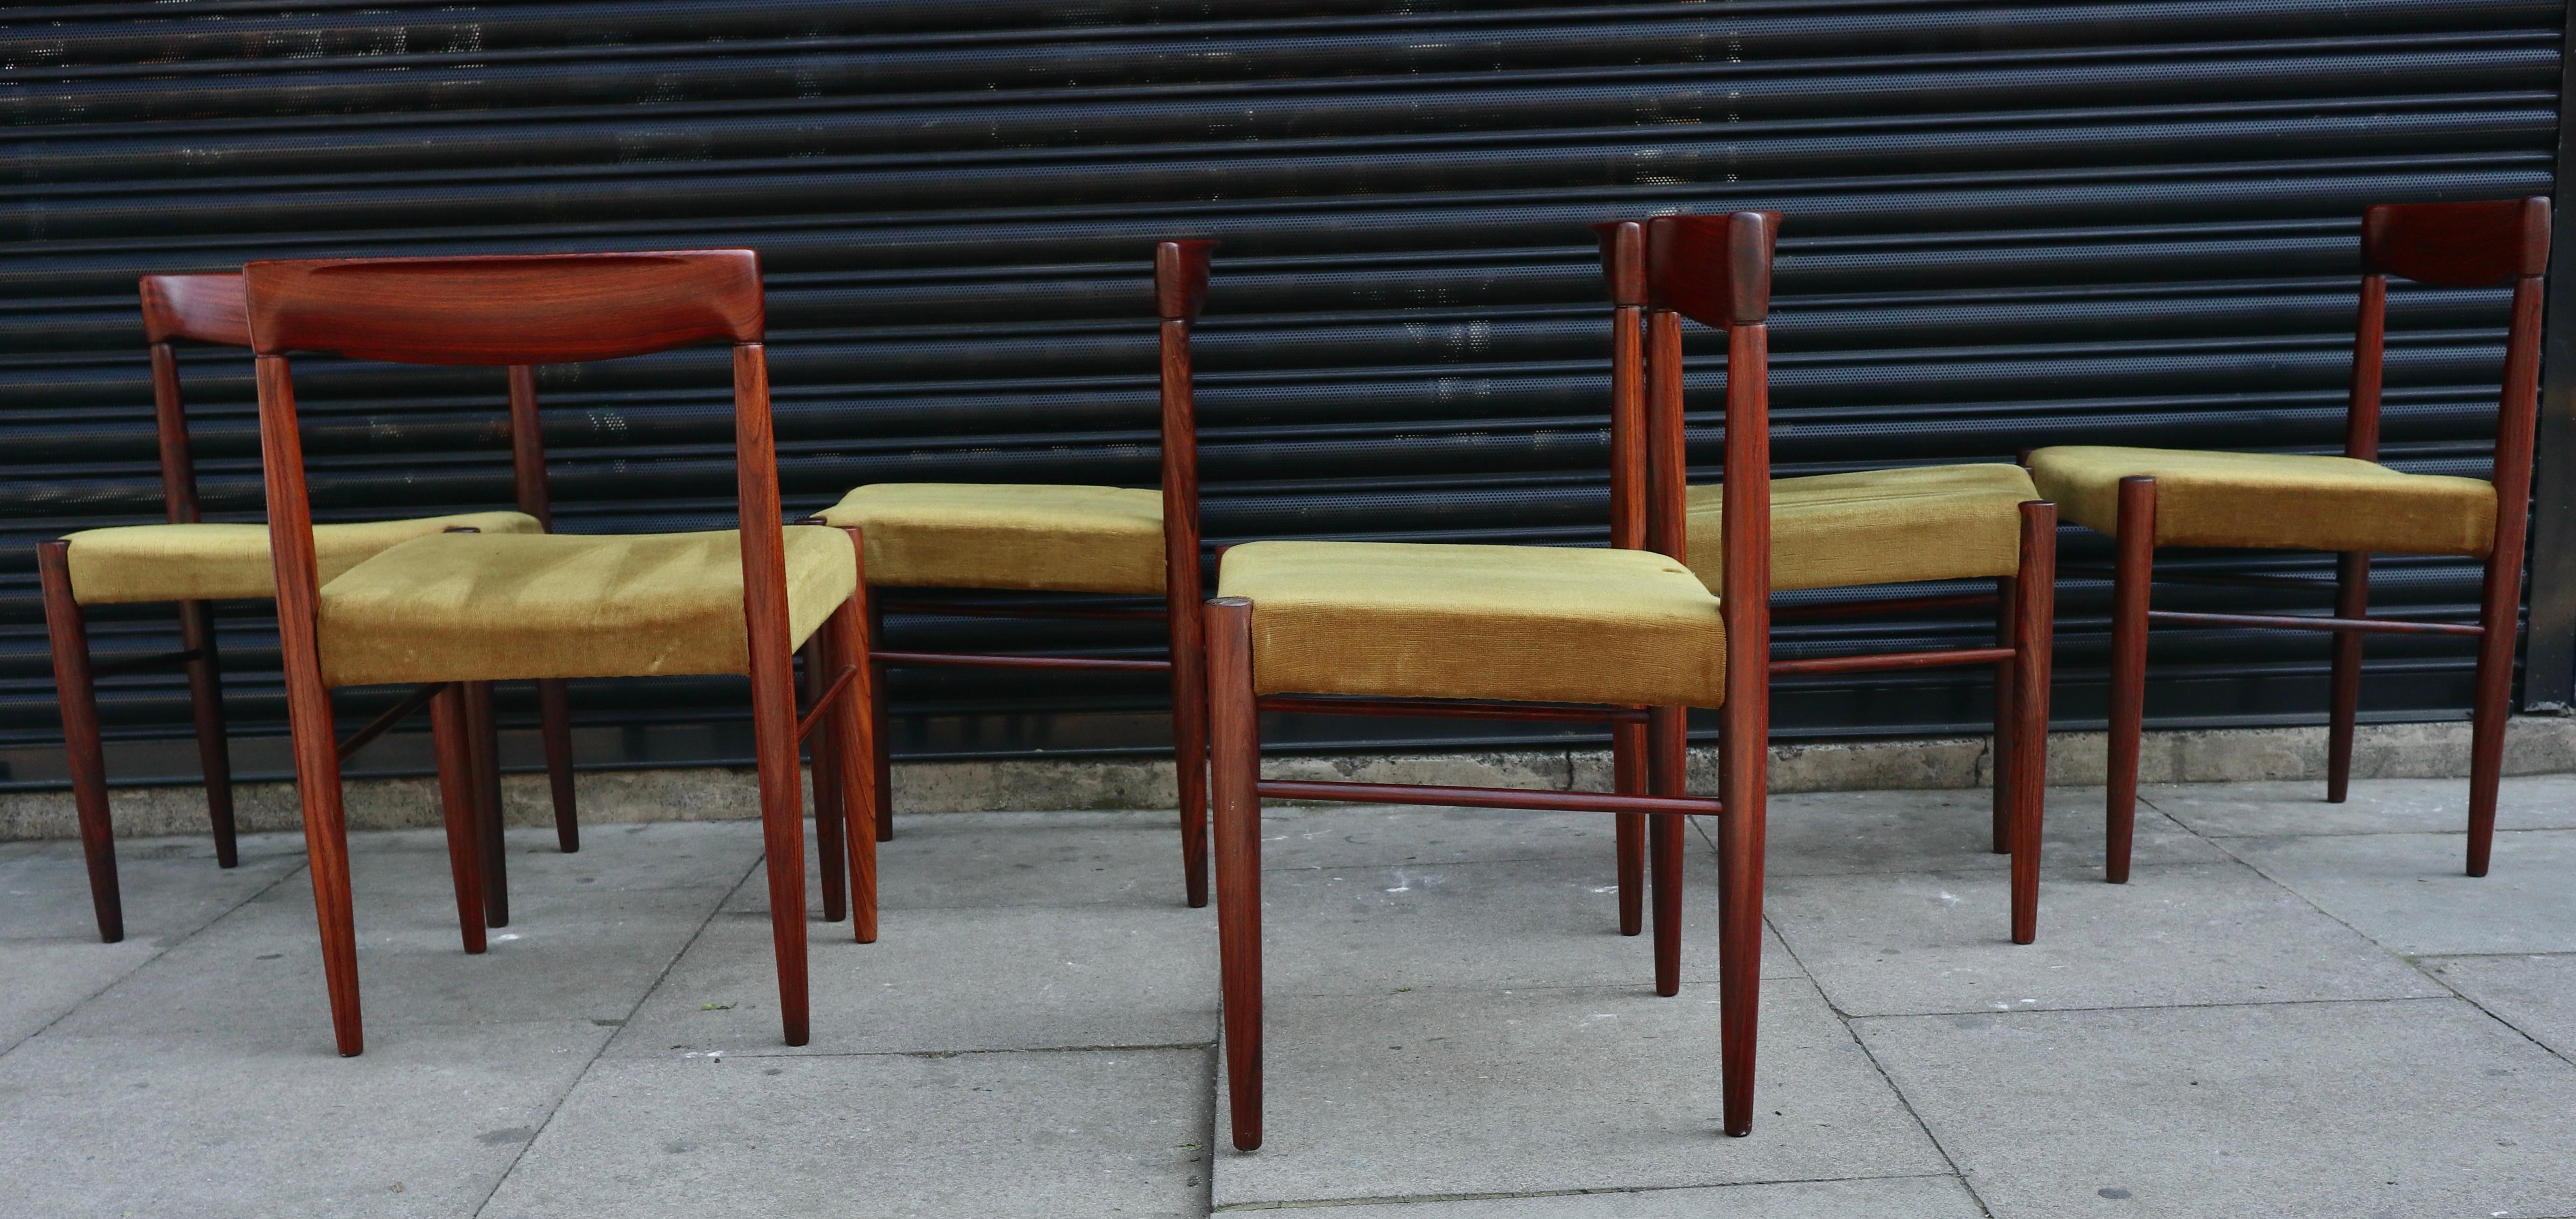 Ein schönes und stilvolles Set aus sechs dänischen Esszimmerstühlen aus massivem Palisanderholz aus den 1960er Jahren, gepolstert mit dem originalen gelben Veloursstoff.  Diese von H. W. Klein entworfenen Stühle wurden von Bramin hergestellt und